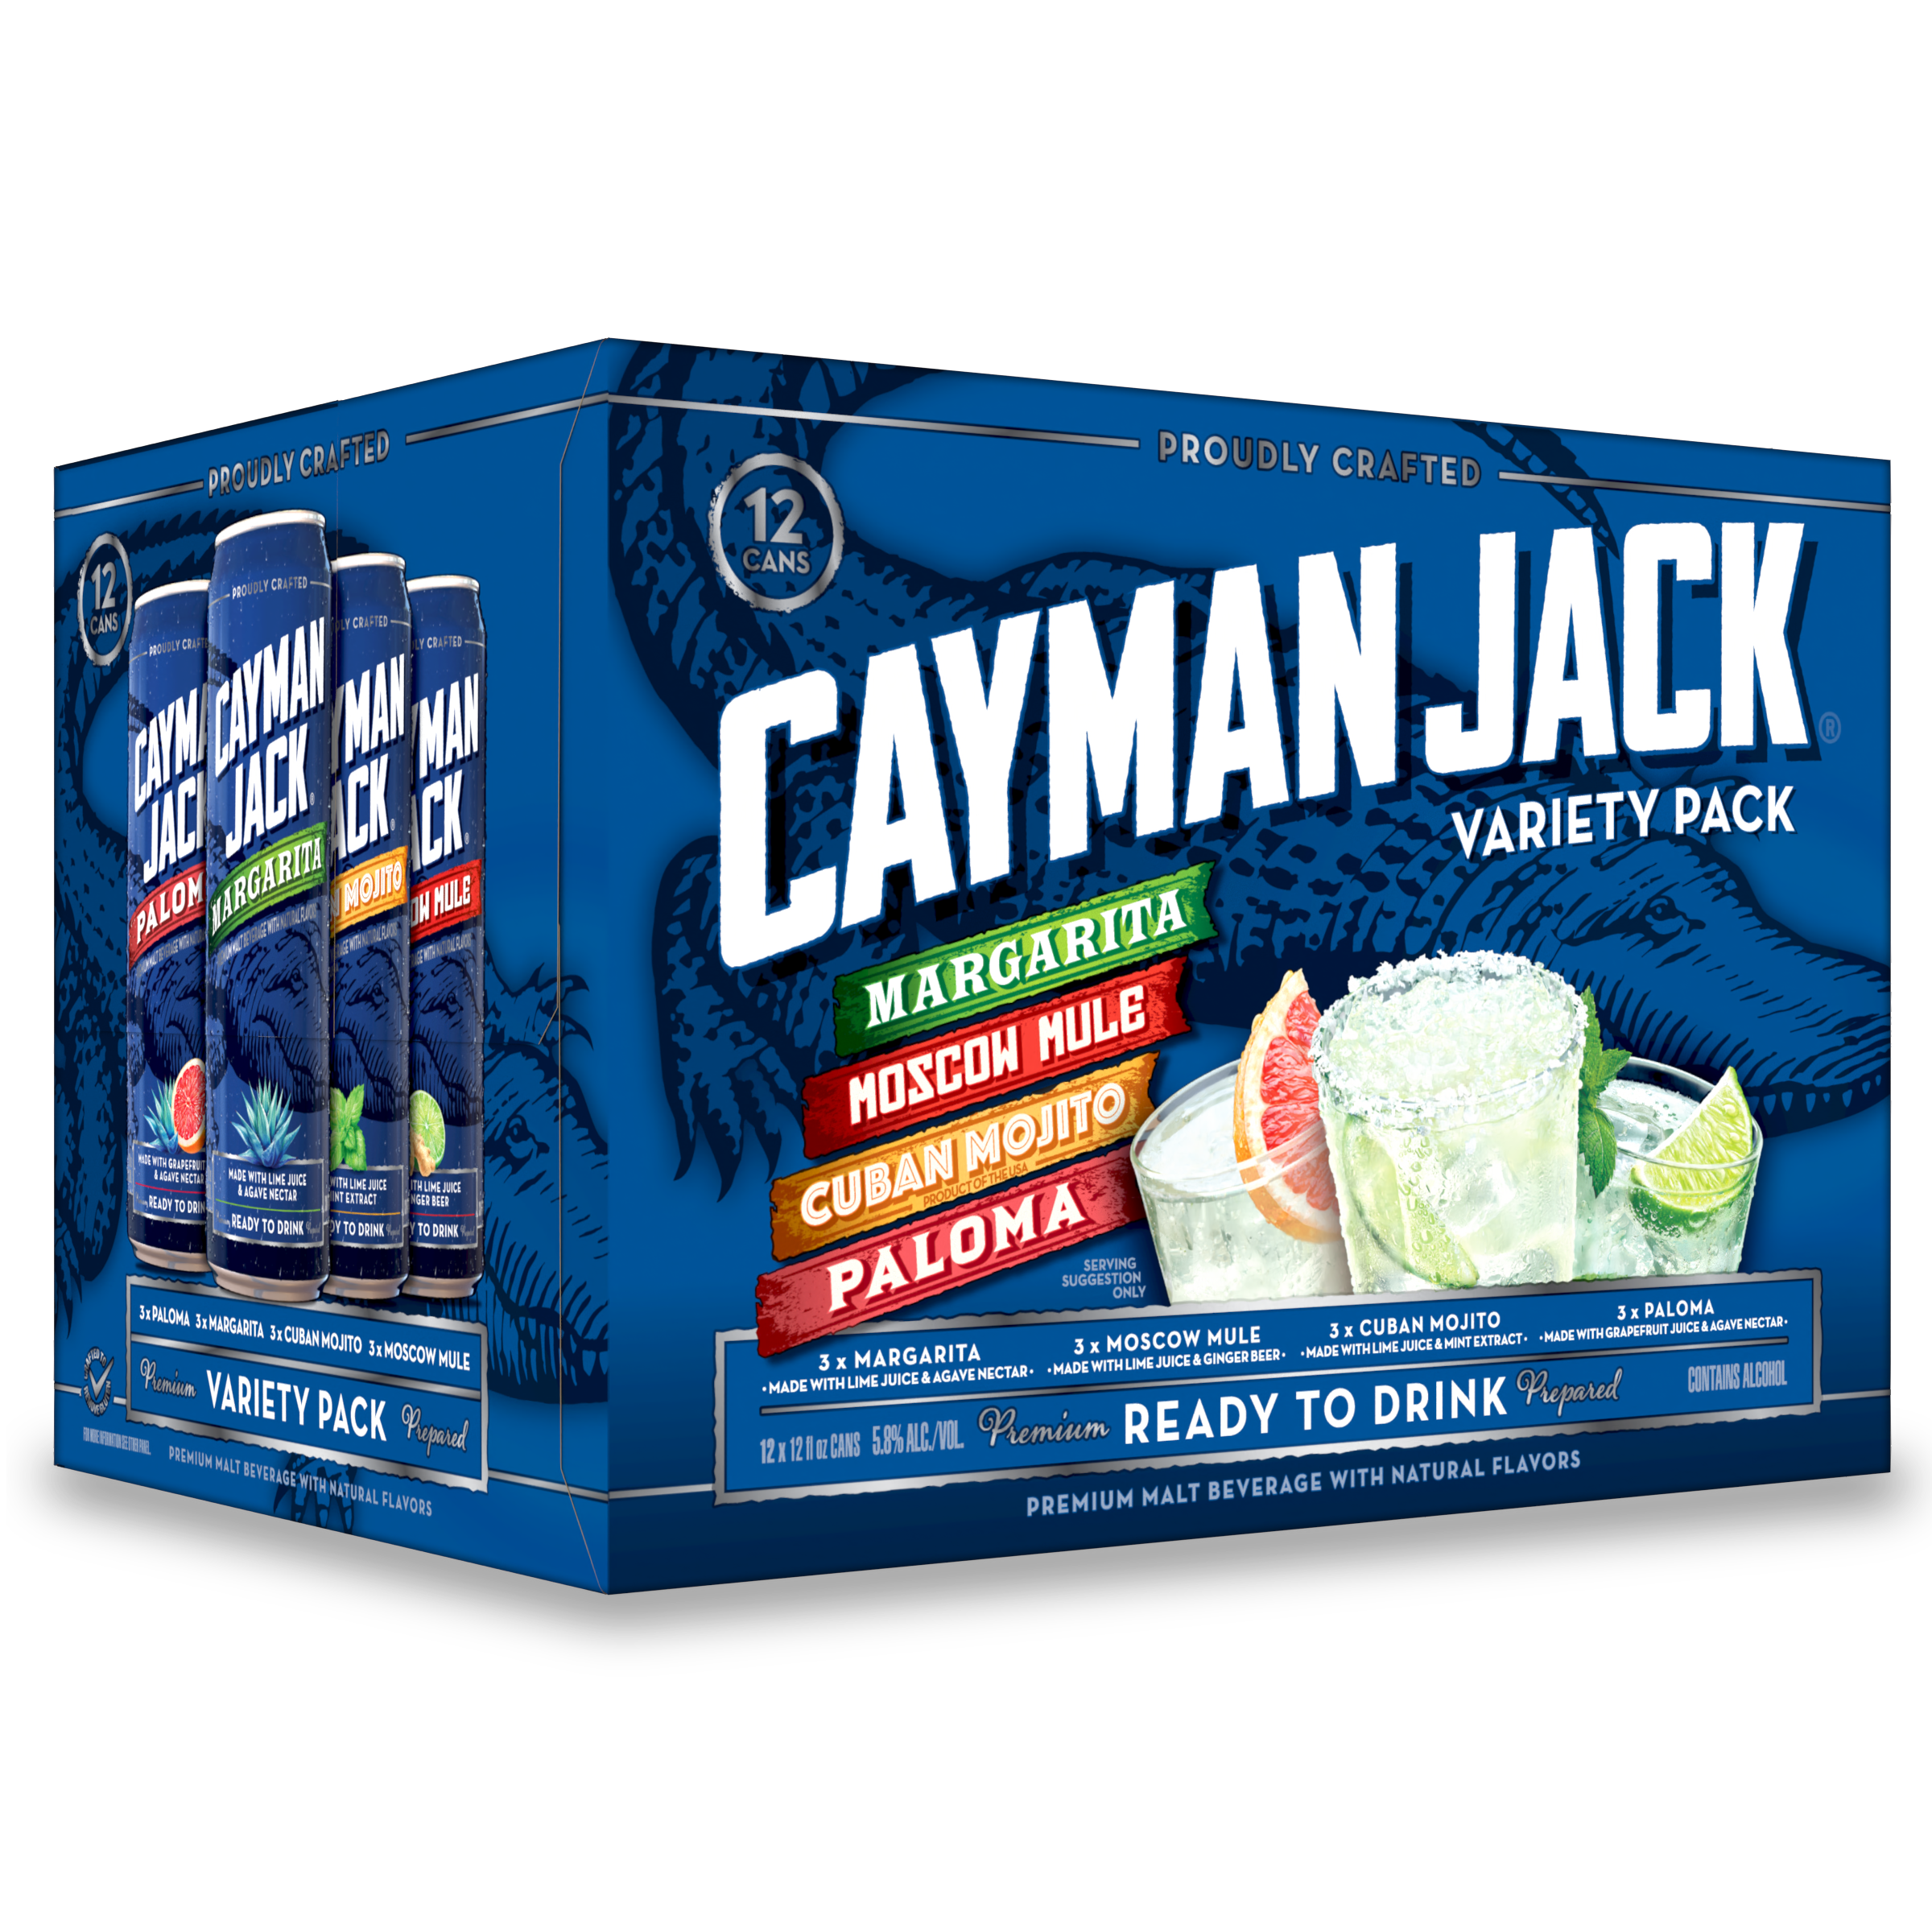 Cayman Jack, Cayman Jack® Variety Pack 12pk